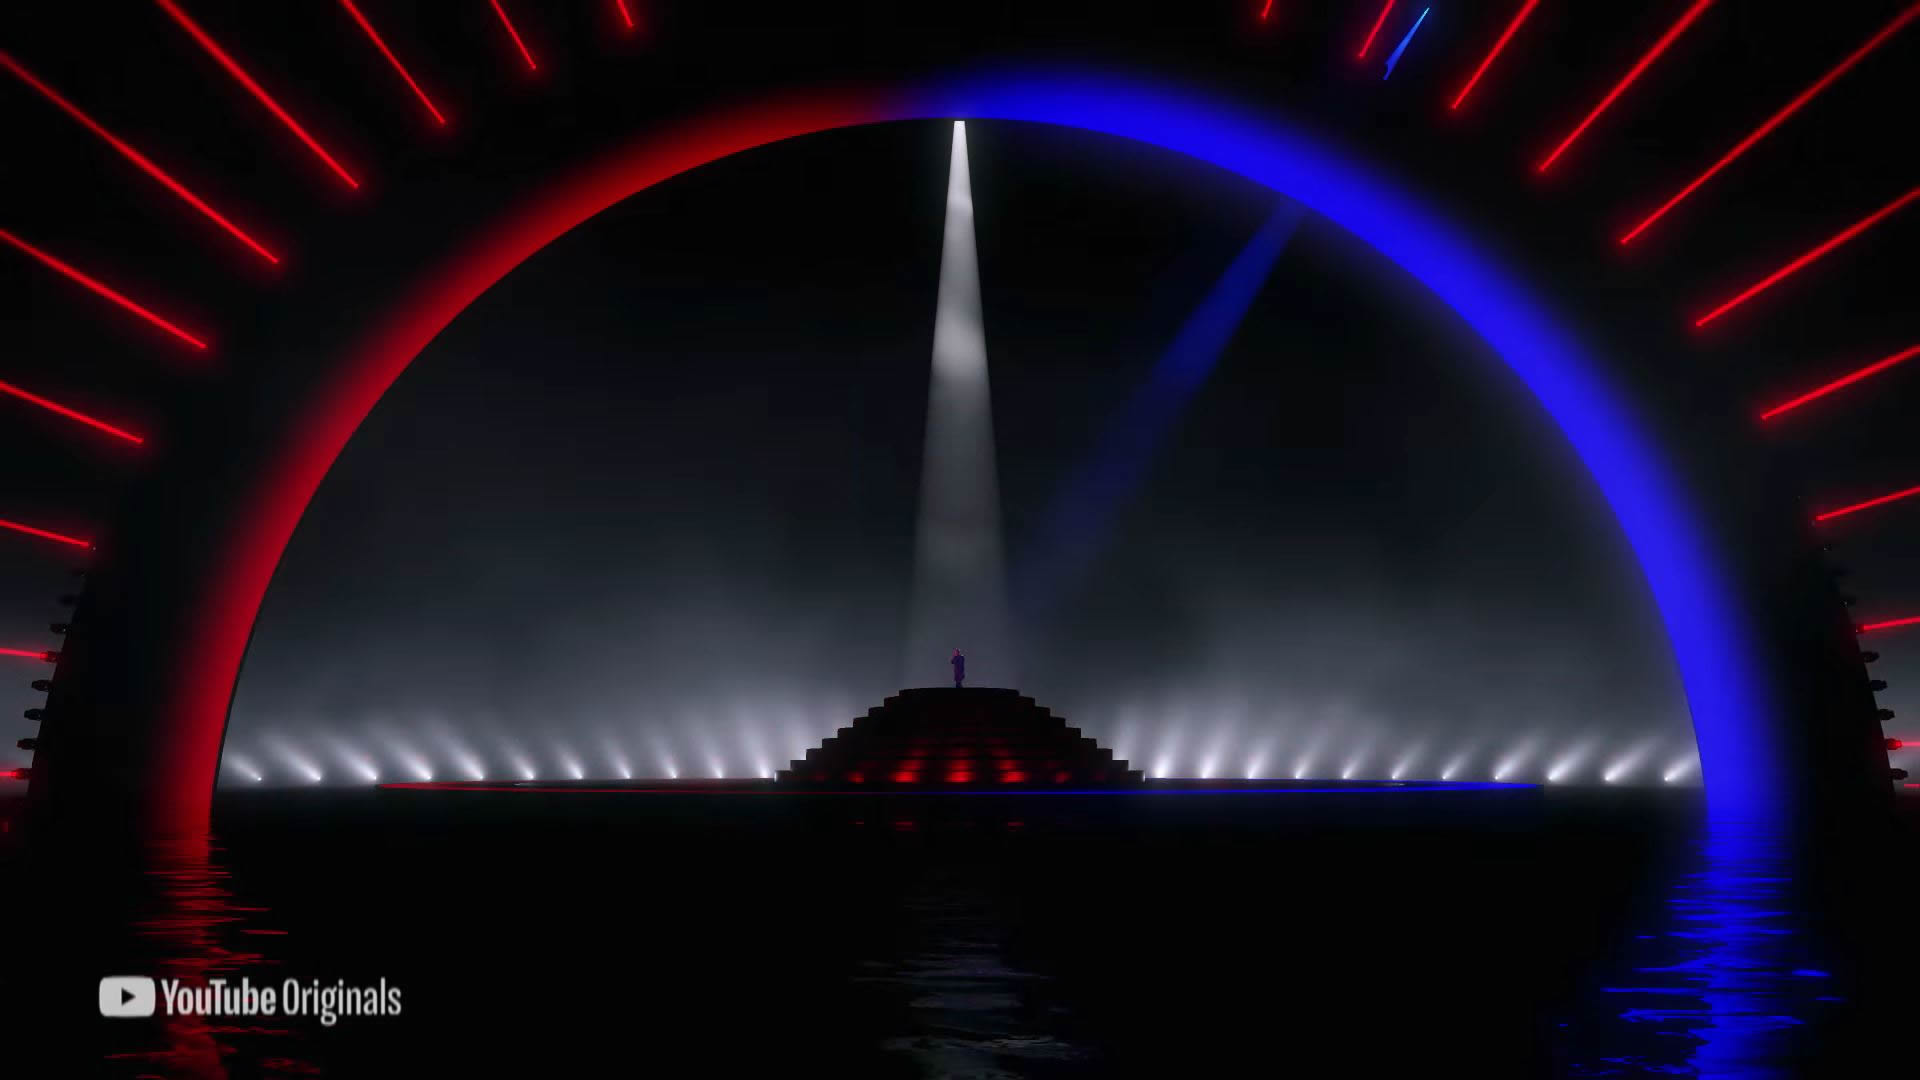 J Balvin Comparte Su Performance De "Mi Gente" En El Hello 2021: Americas De Youtube Originals